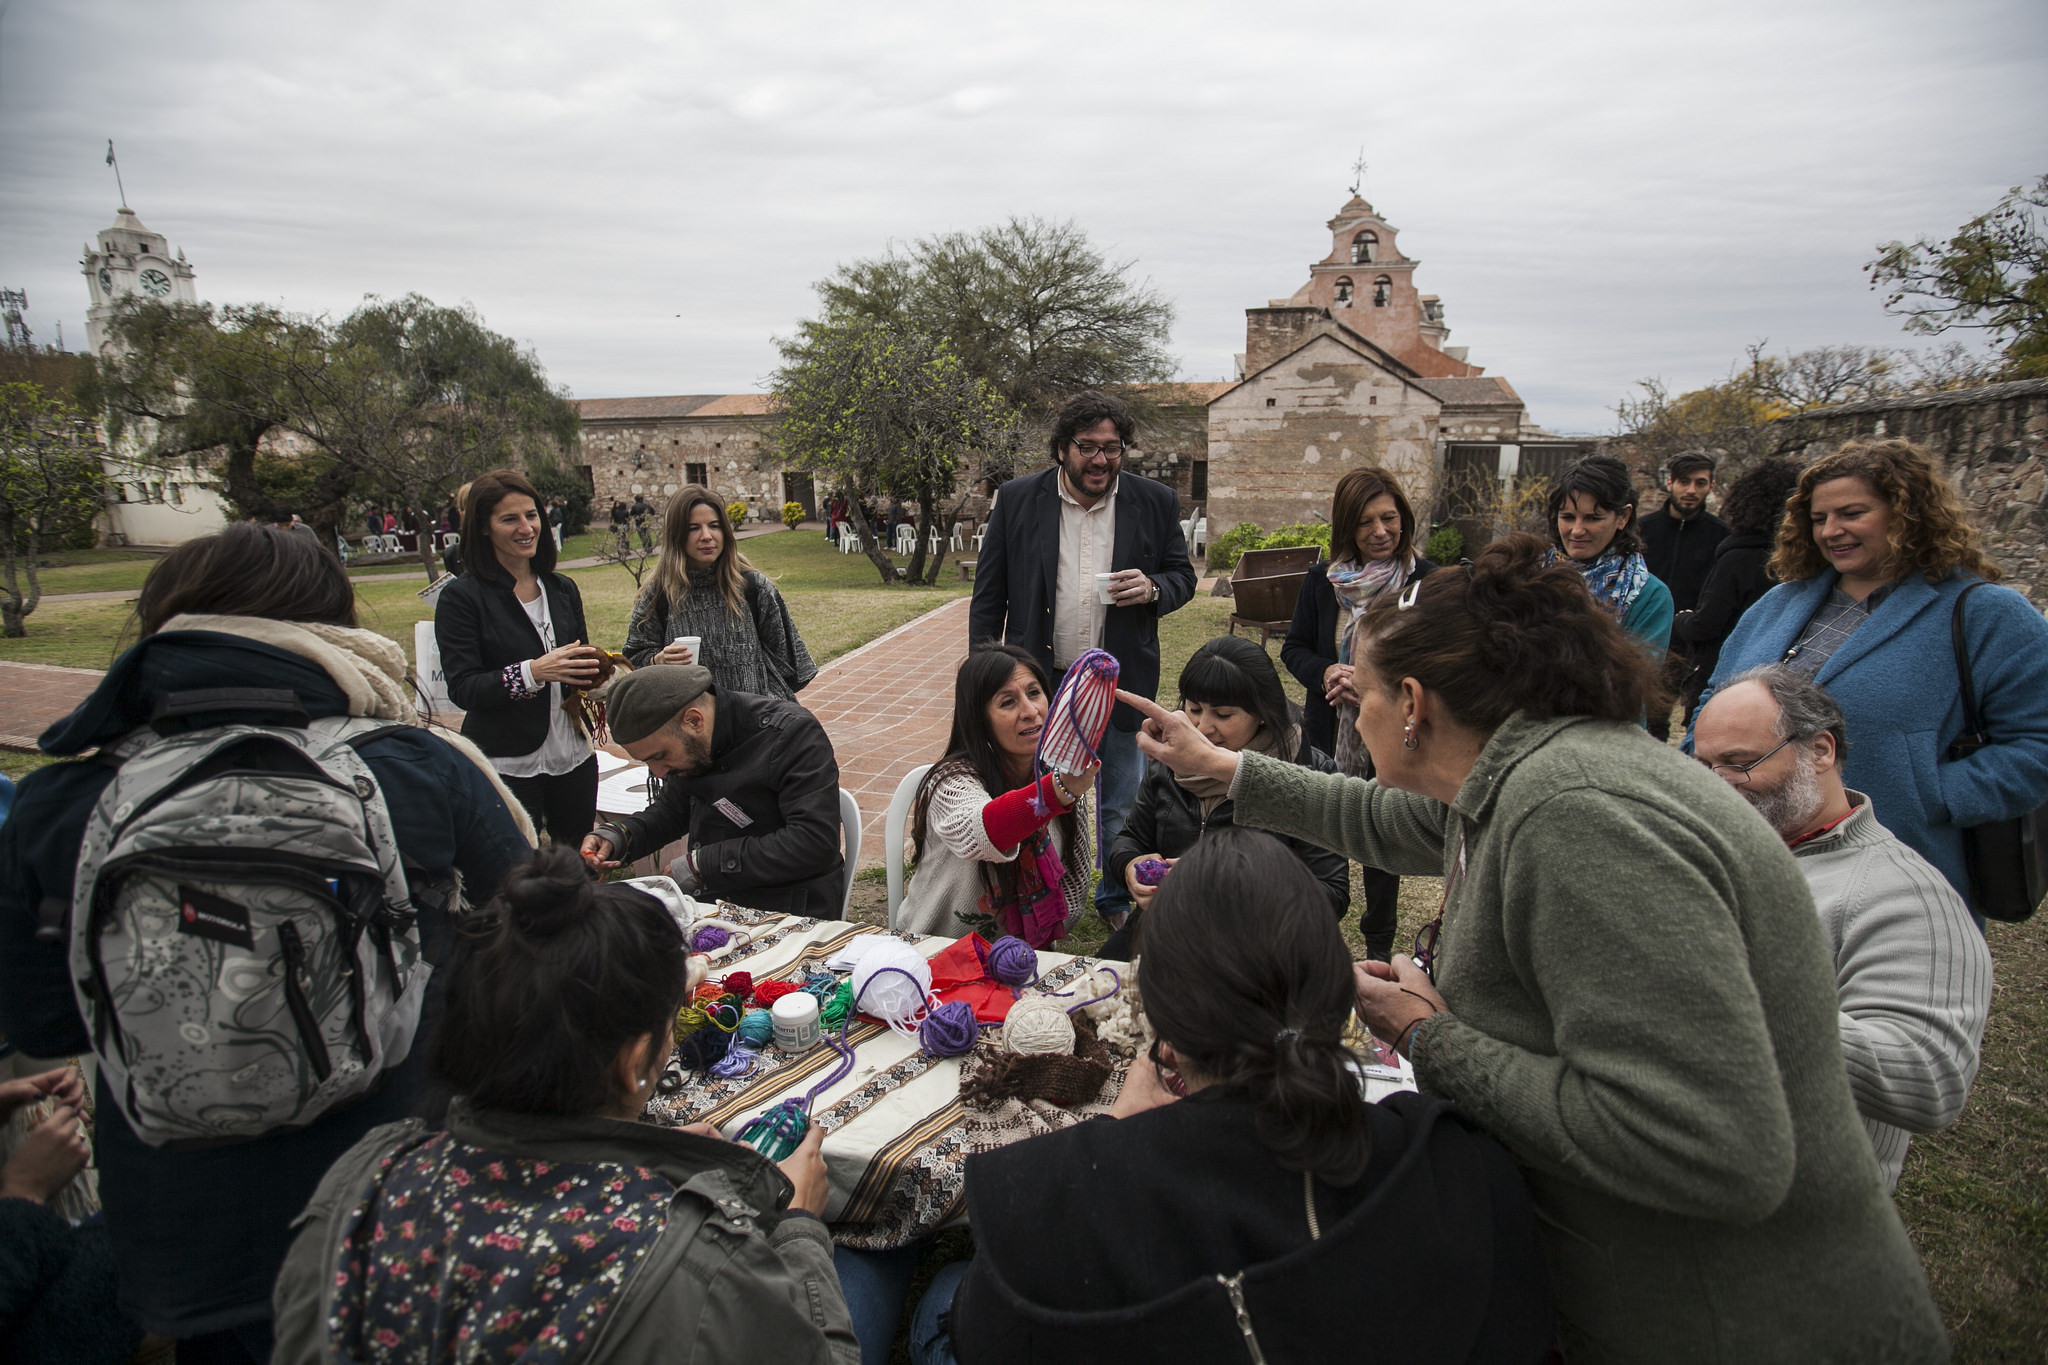 Talleres comunitarios y homenaje a la tradición: así fue el cierre del encuentro de museos en Córdoba